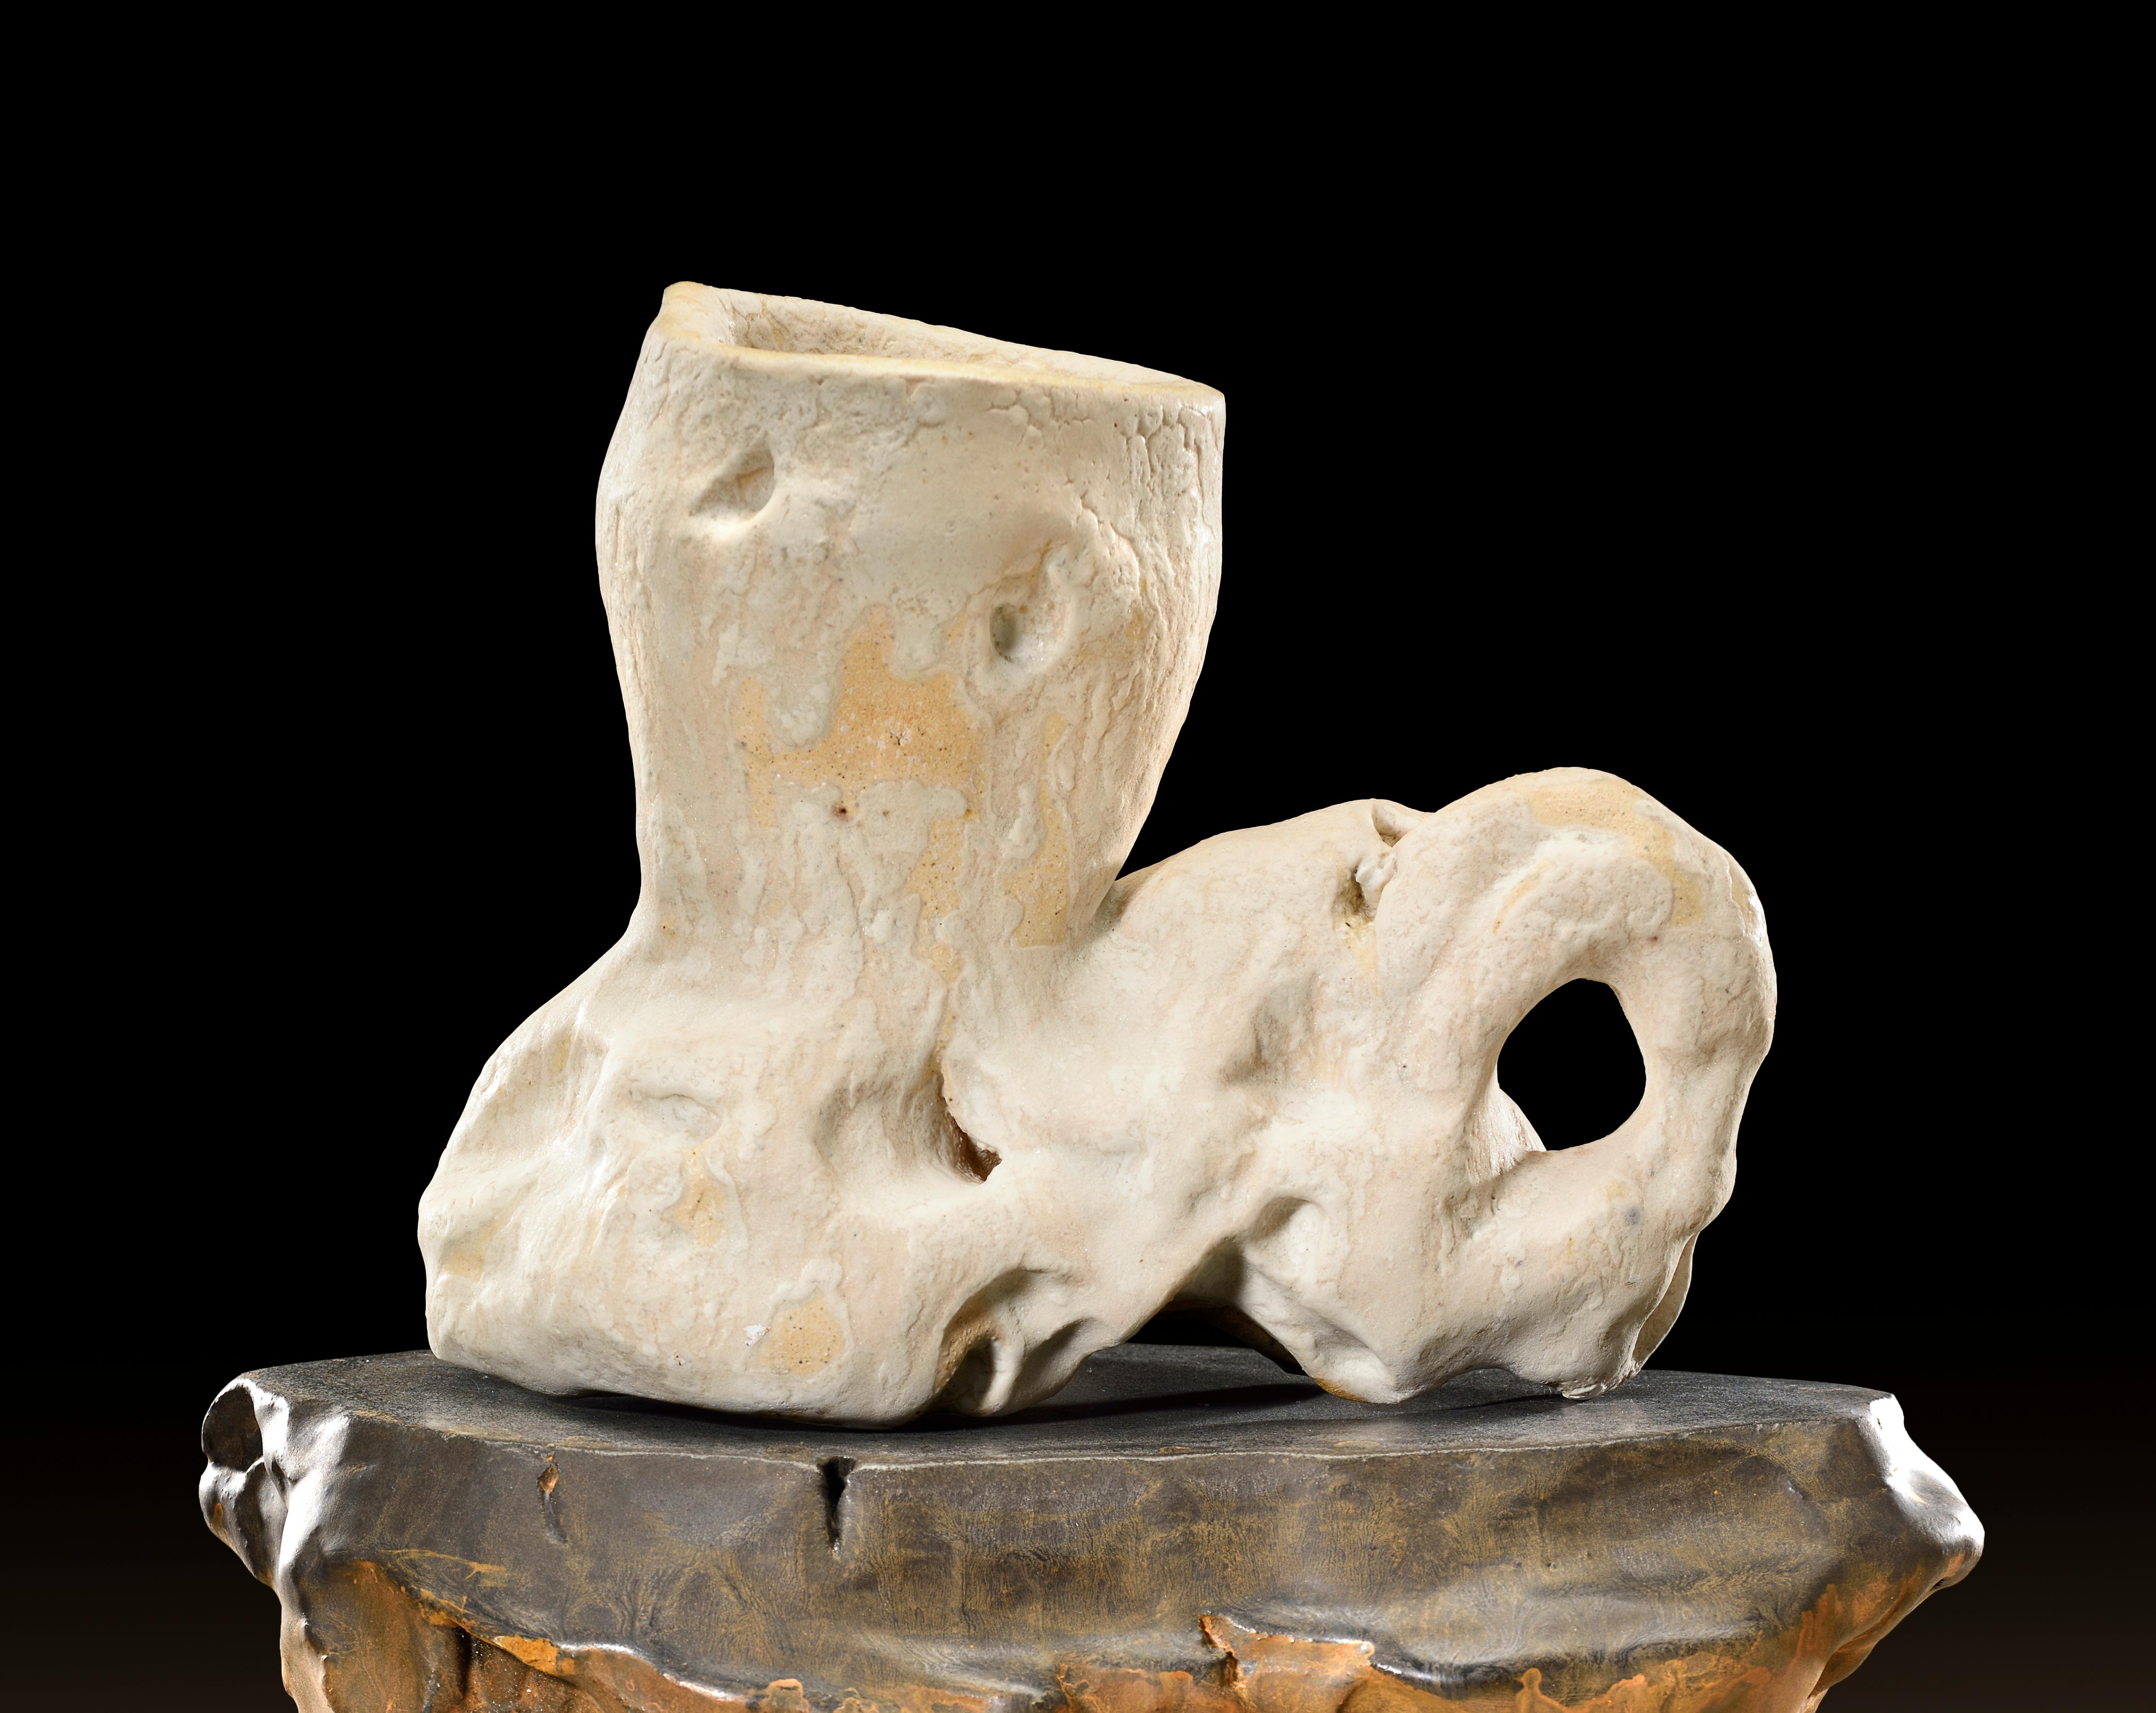 Modern Richard Hirsch Ceramic Scholar Rock Cup Sculpture #32, 2017 - 2018 For Sale